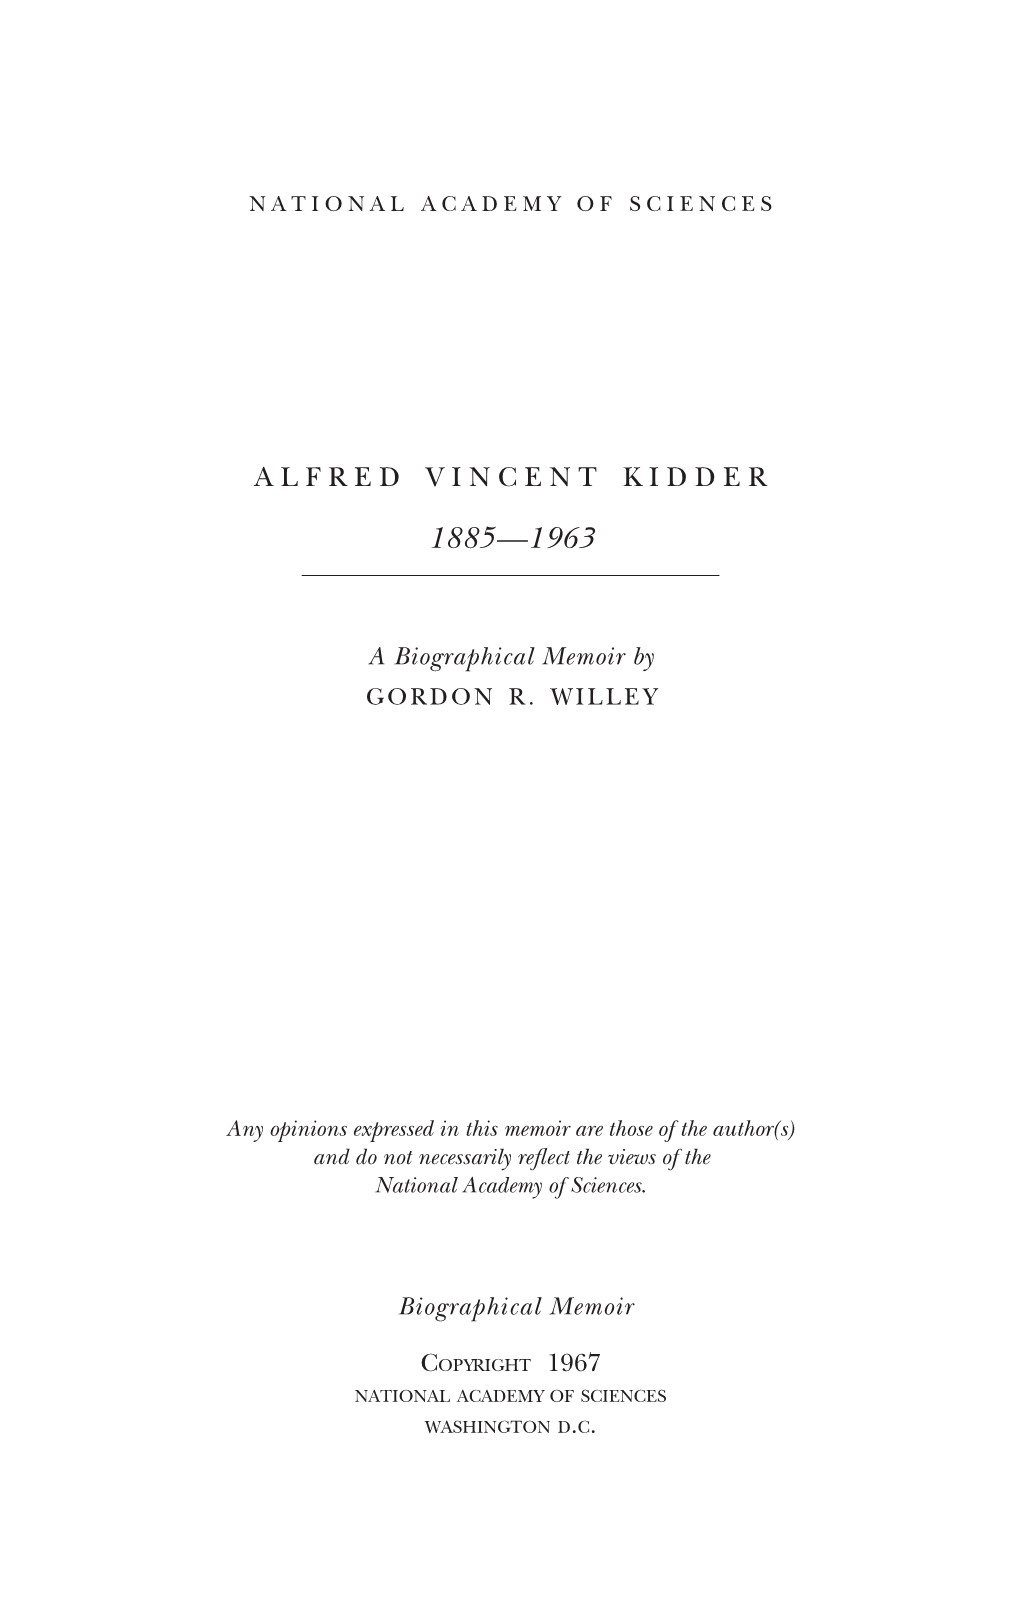 Alfred Vincent Kidder